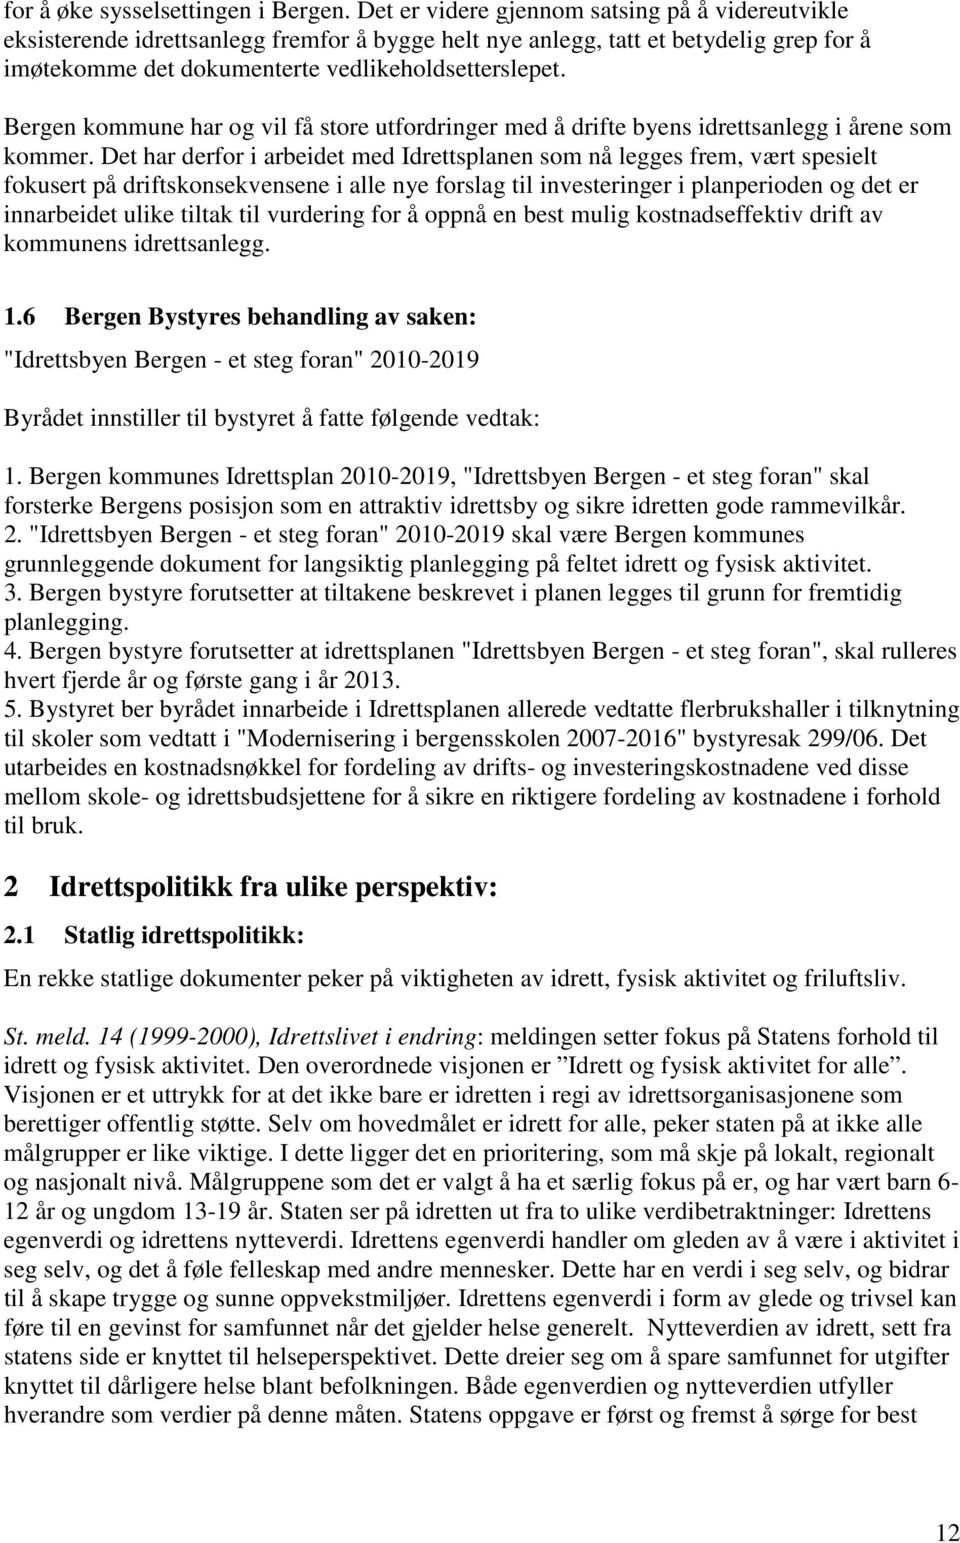 Bergen kommune har og vil få store utfordringer med å drifte byens idrettsanlegg i årene som kommer.